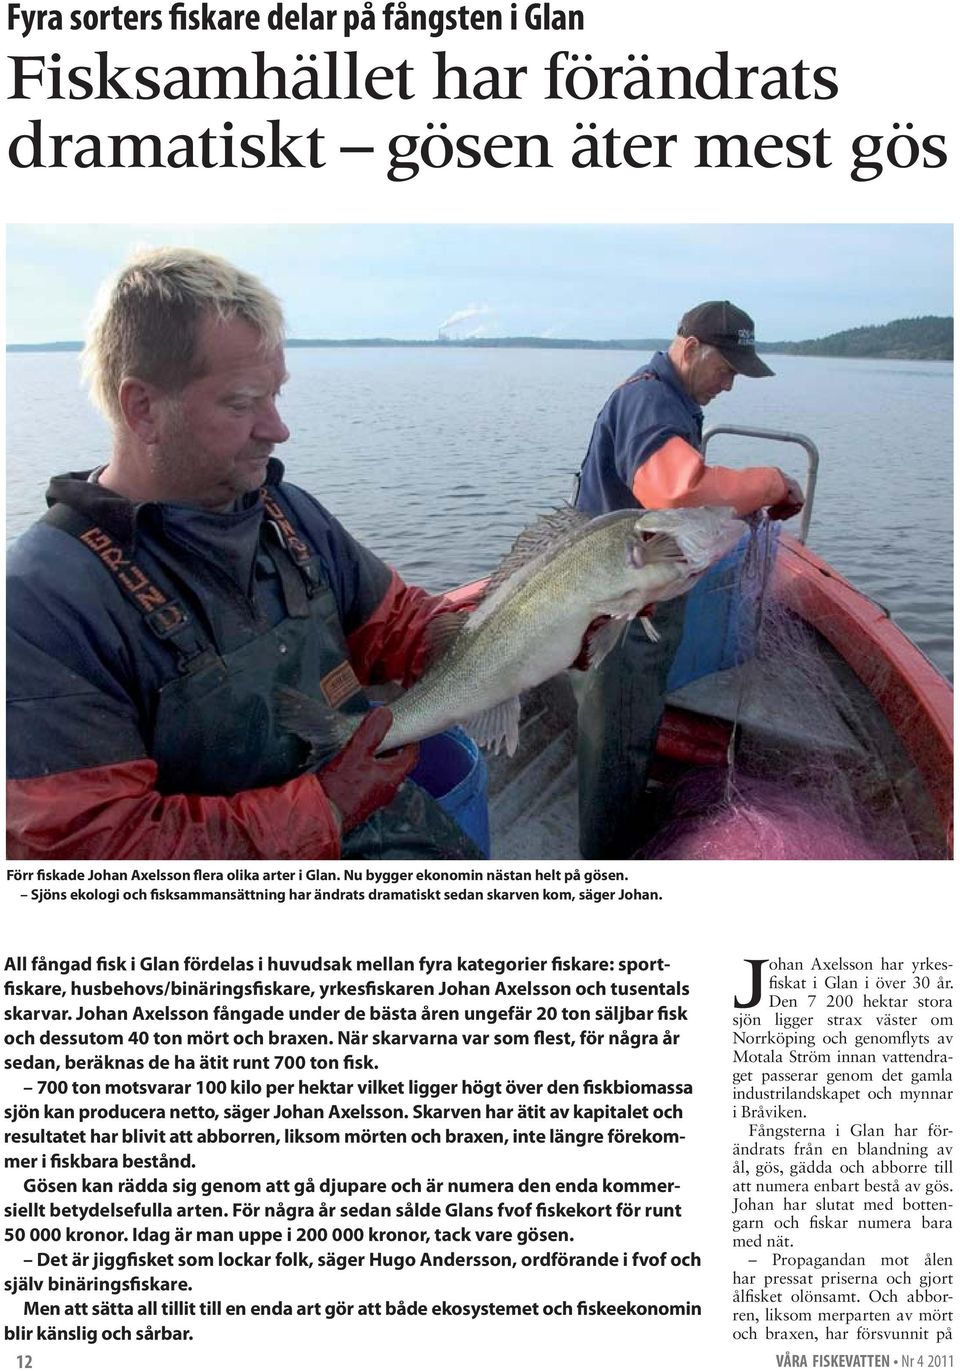 All fångad fisk i Glan fördelas i huvudsak mellan fyra kategorier fiskare: sportfiskare, husbehovs/binäringsfiskare, yrkesfiskaren Johan Axelsson och tusentals skarvar.